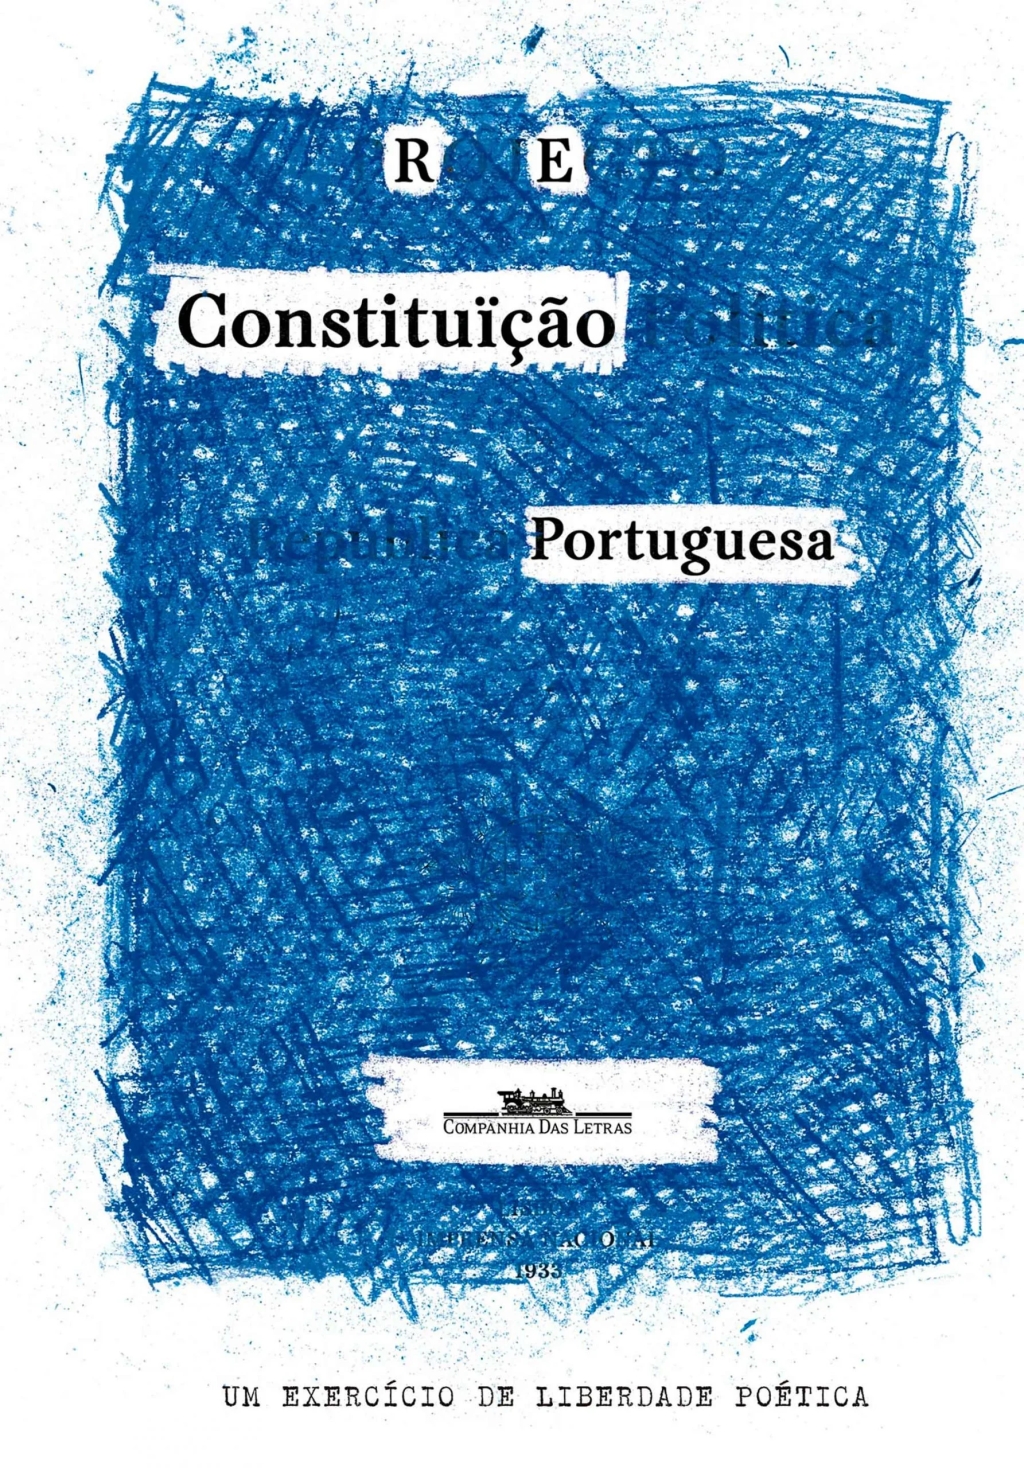 Reconstituição Portuguesa